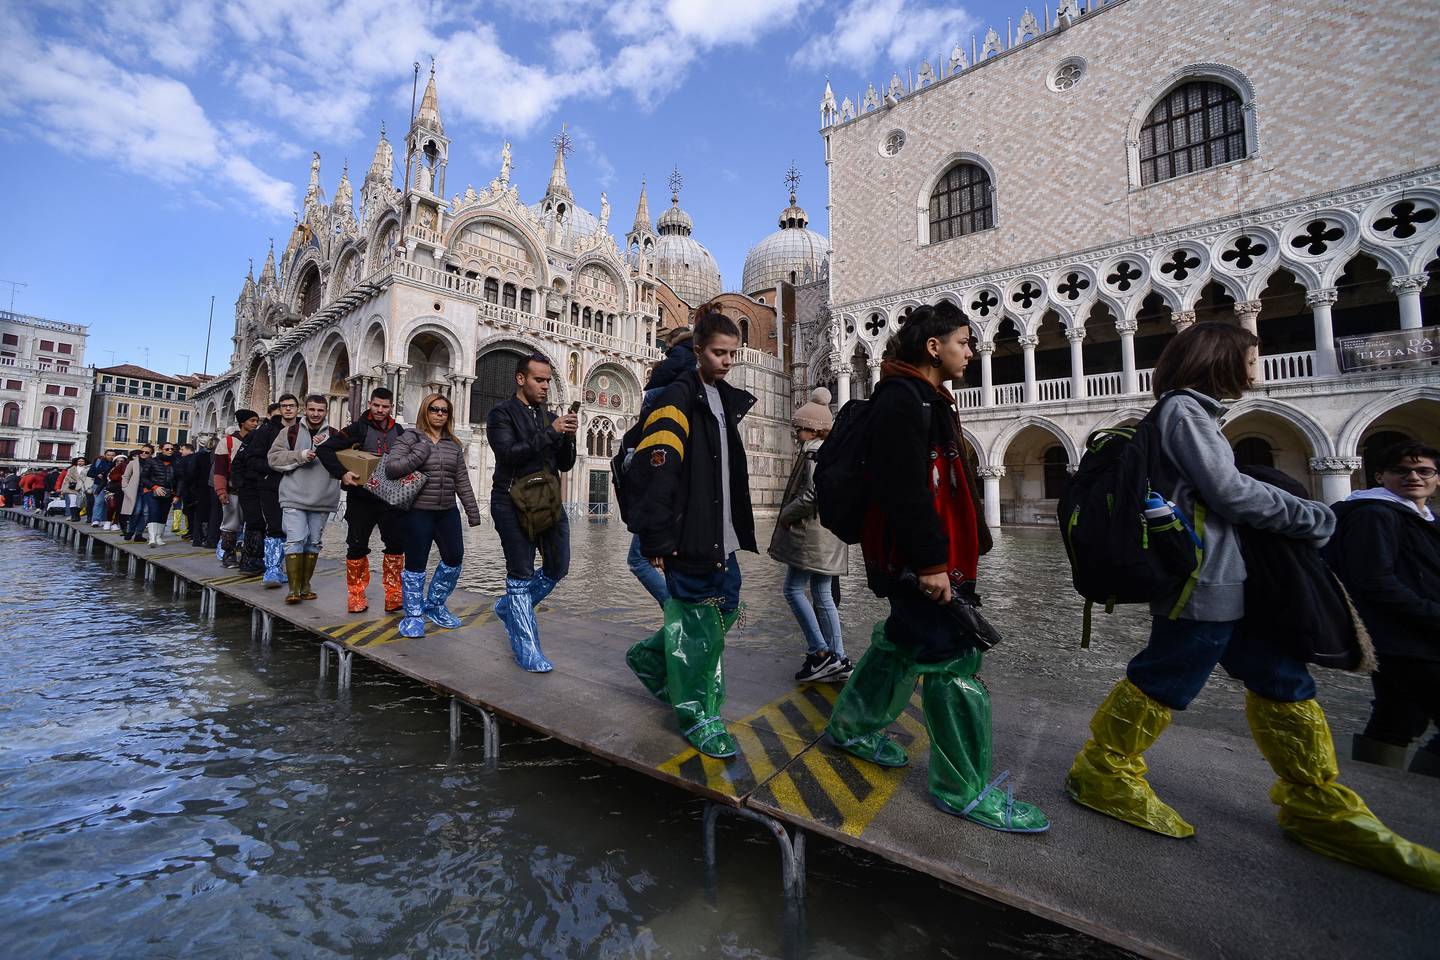 La Unesco había recomendado incluir a Venecia en la lista de patrimonio mundial en peligro debido a la falta de medidas efectivas para abordar los problemas causados por el cambio climático y el turismo masivo.